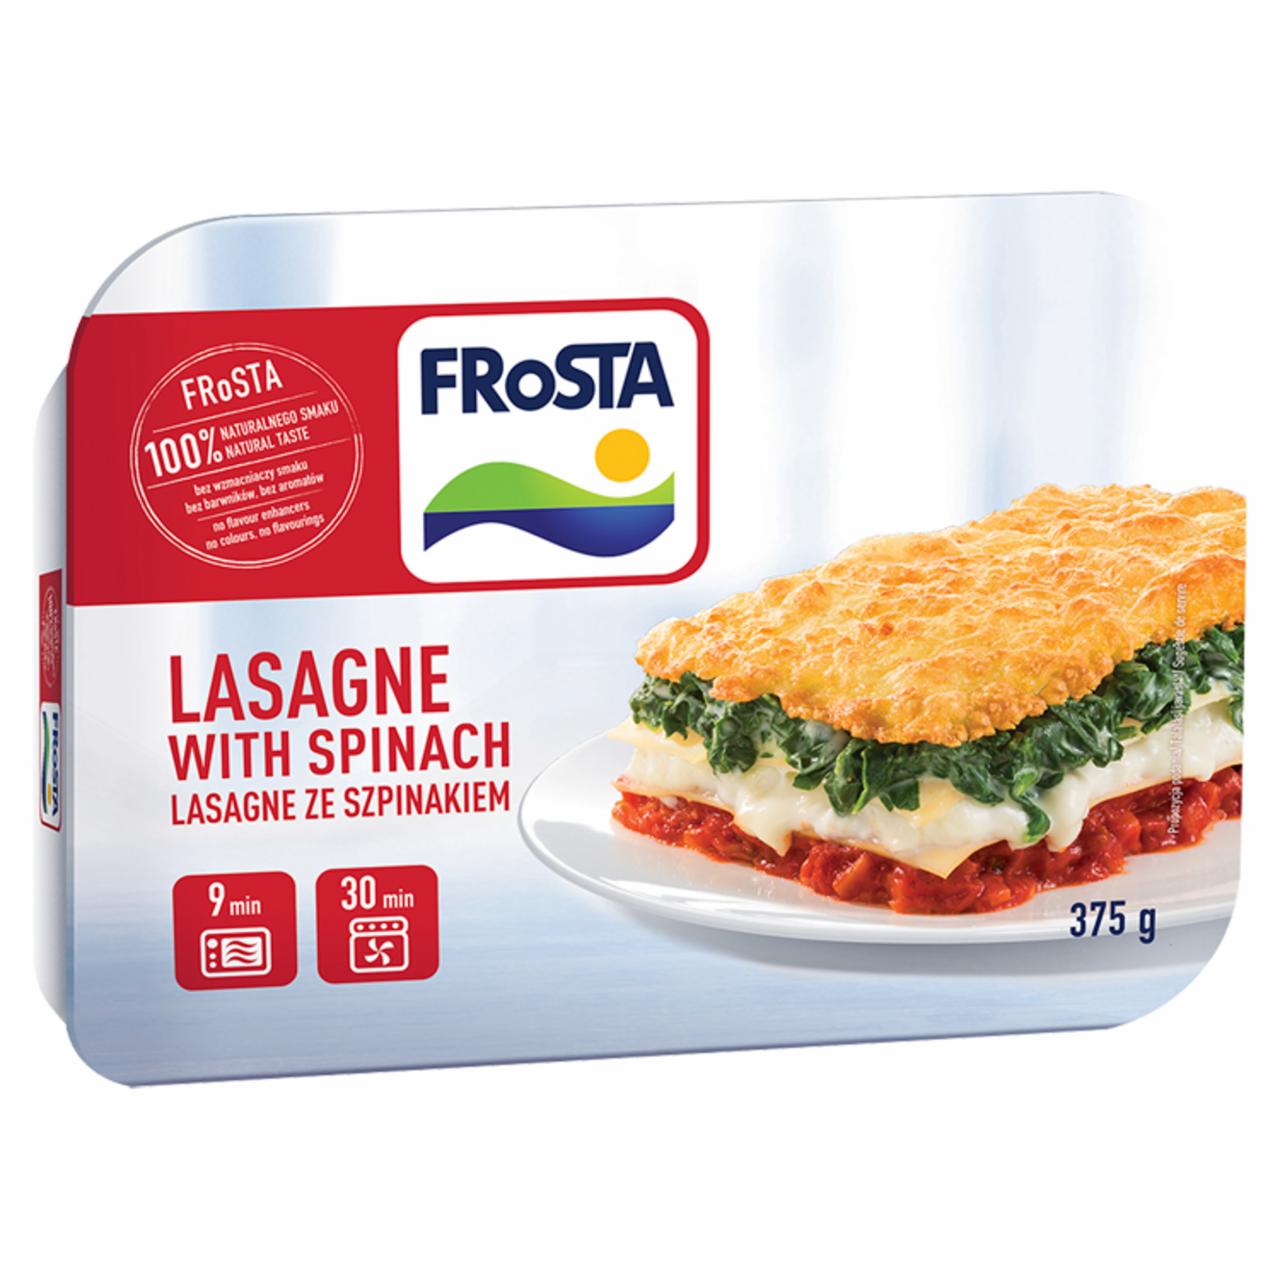 Zdjęcia - FRoSTA Lasagne ze szpinakiem 375 g